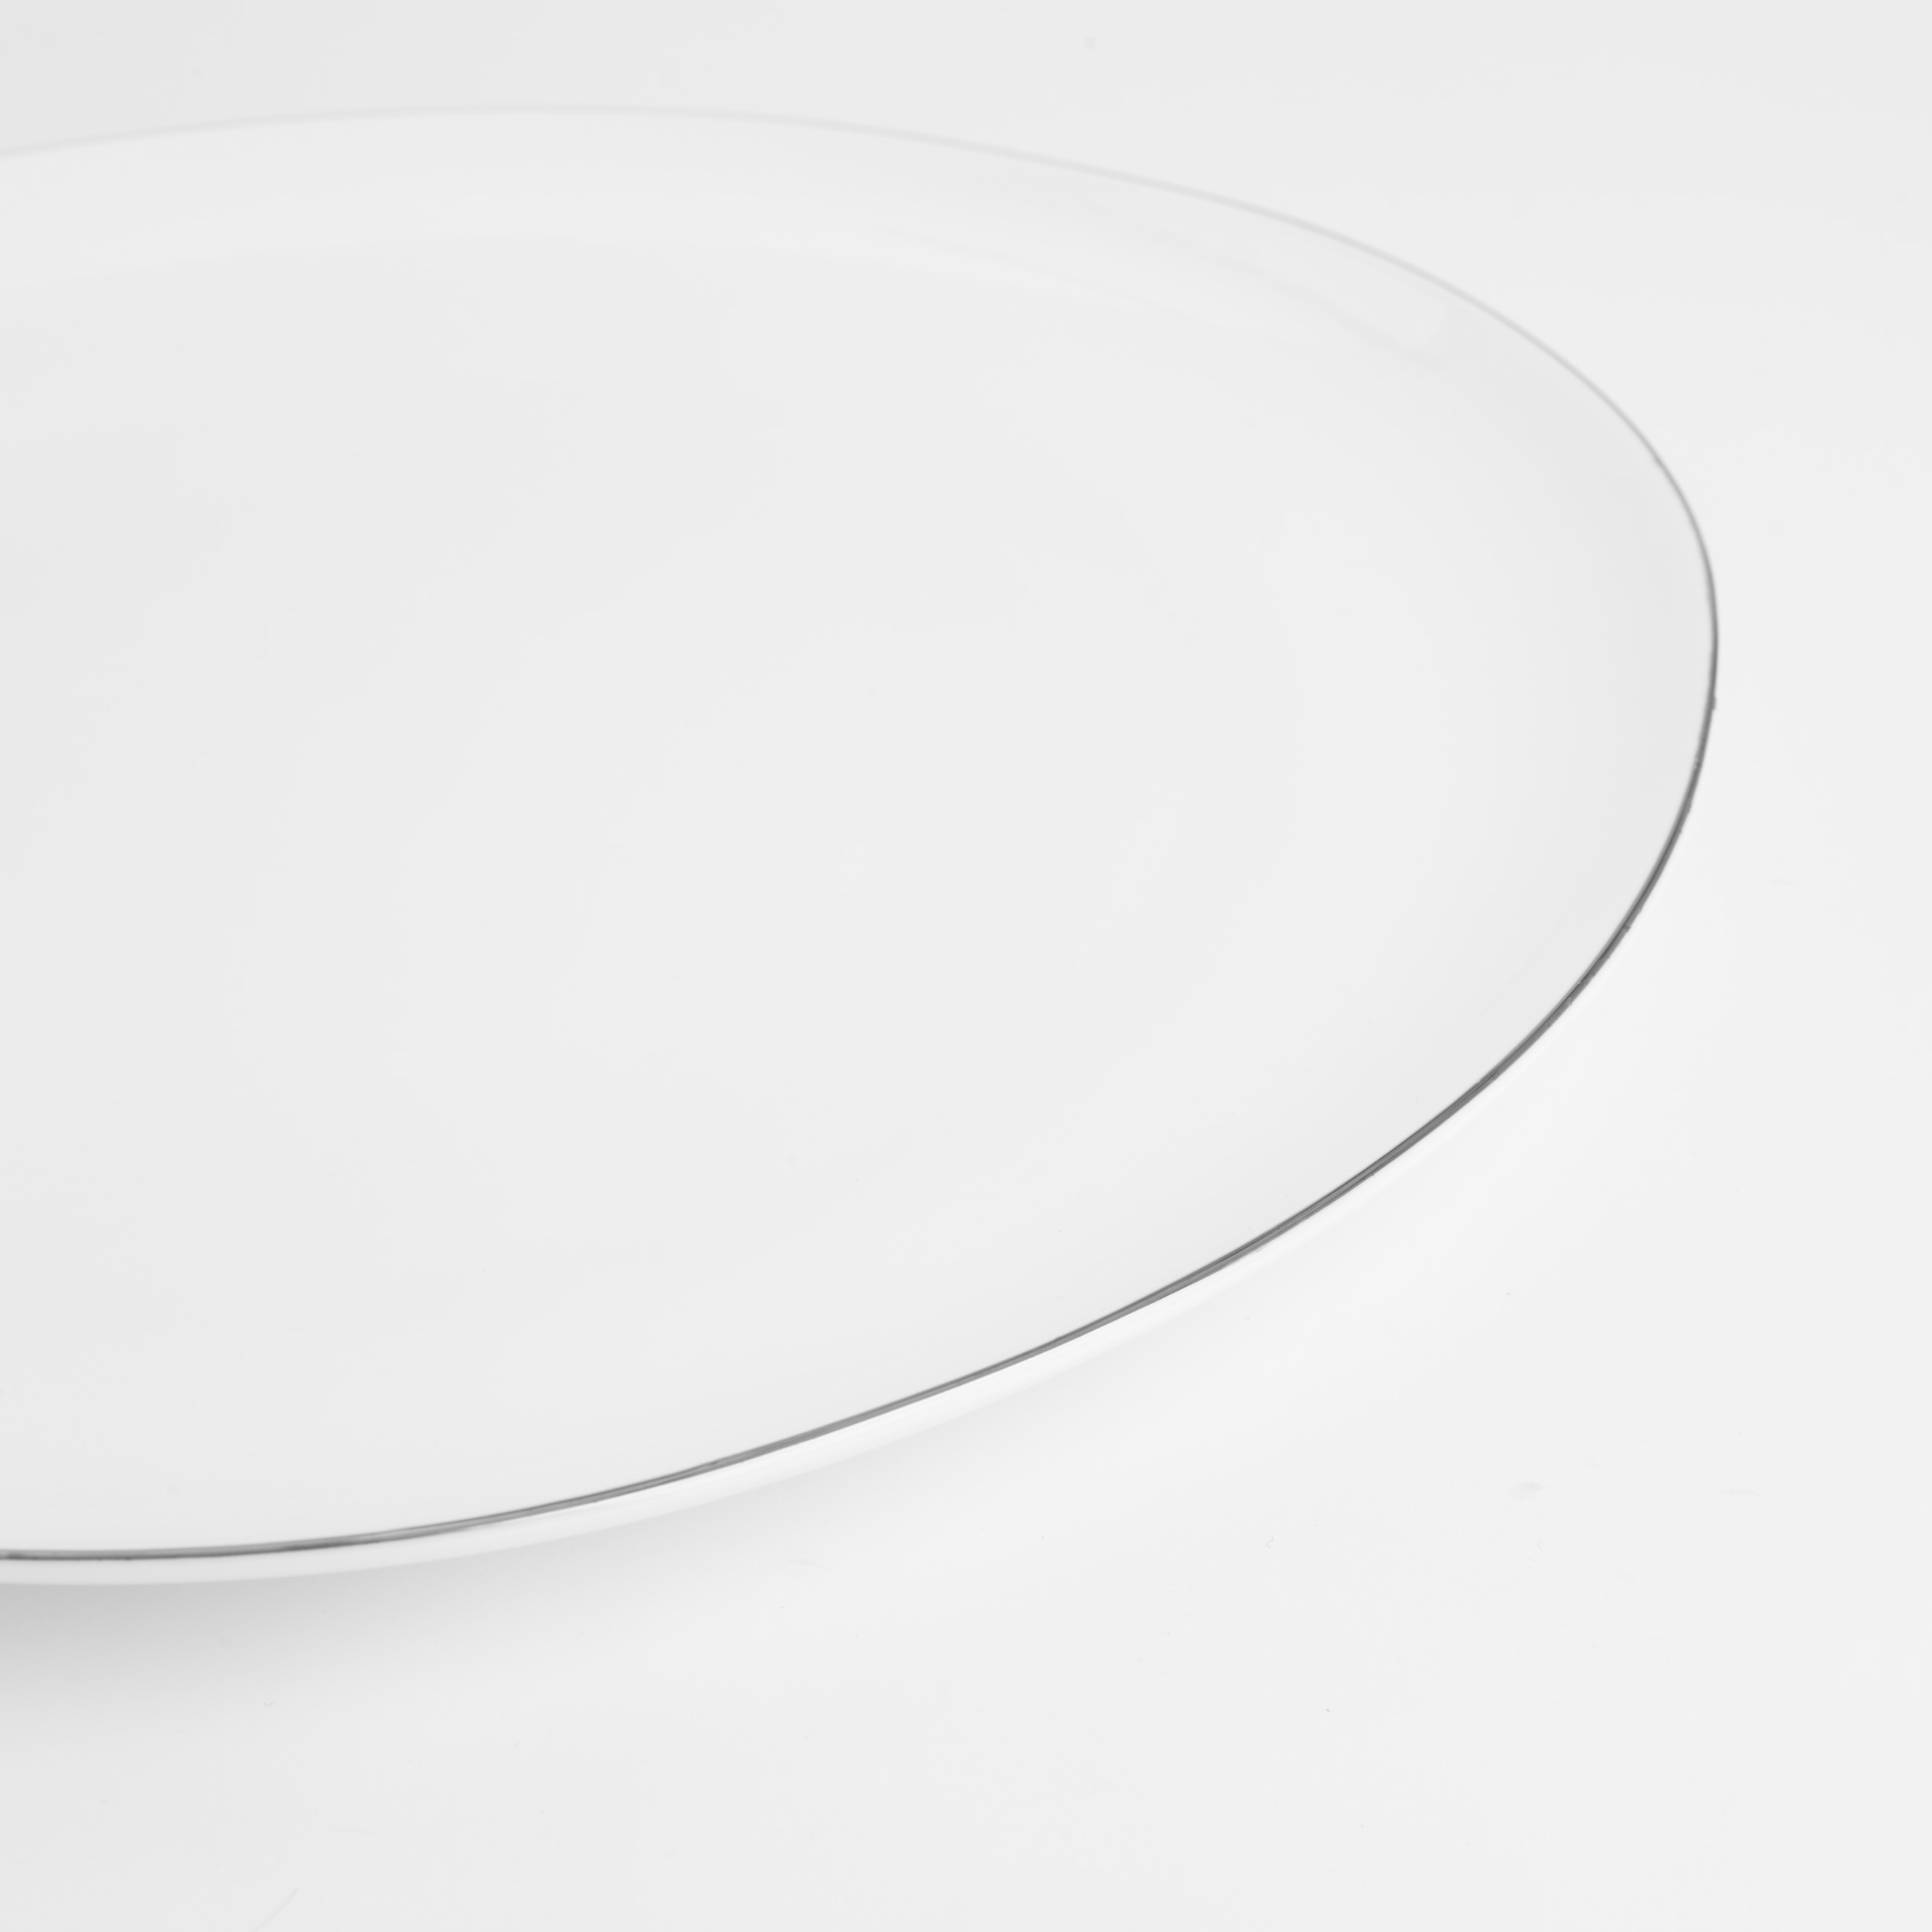 Тарелка обеденная, 29 см, фарфор F, белая, Bend silver изображение № 3